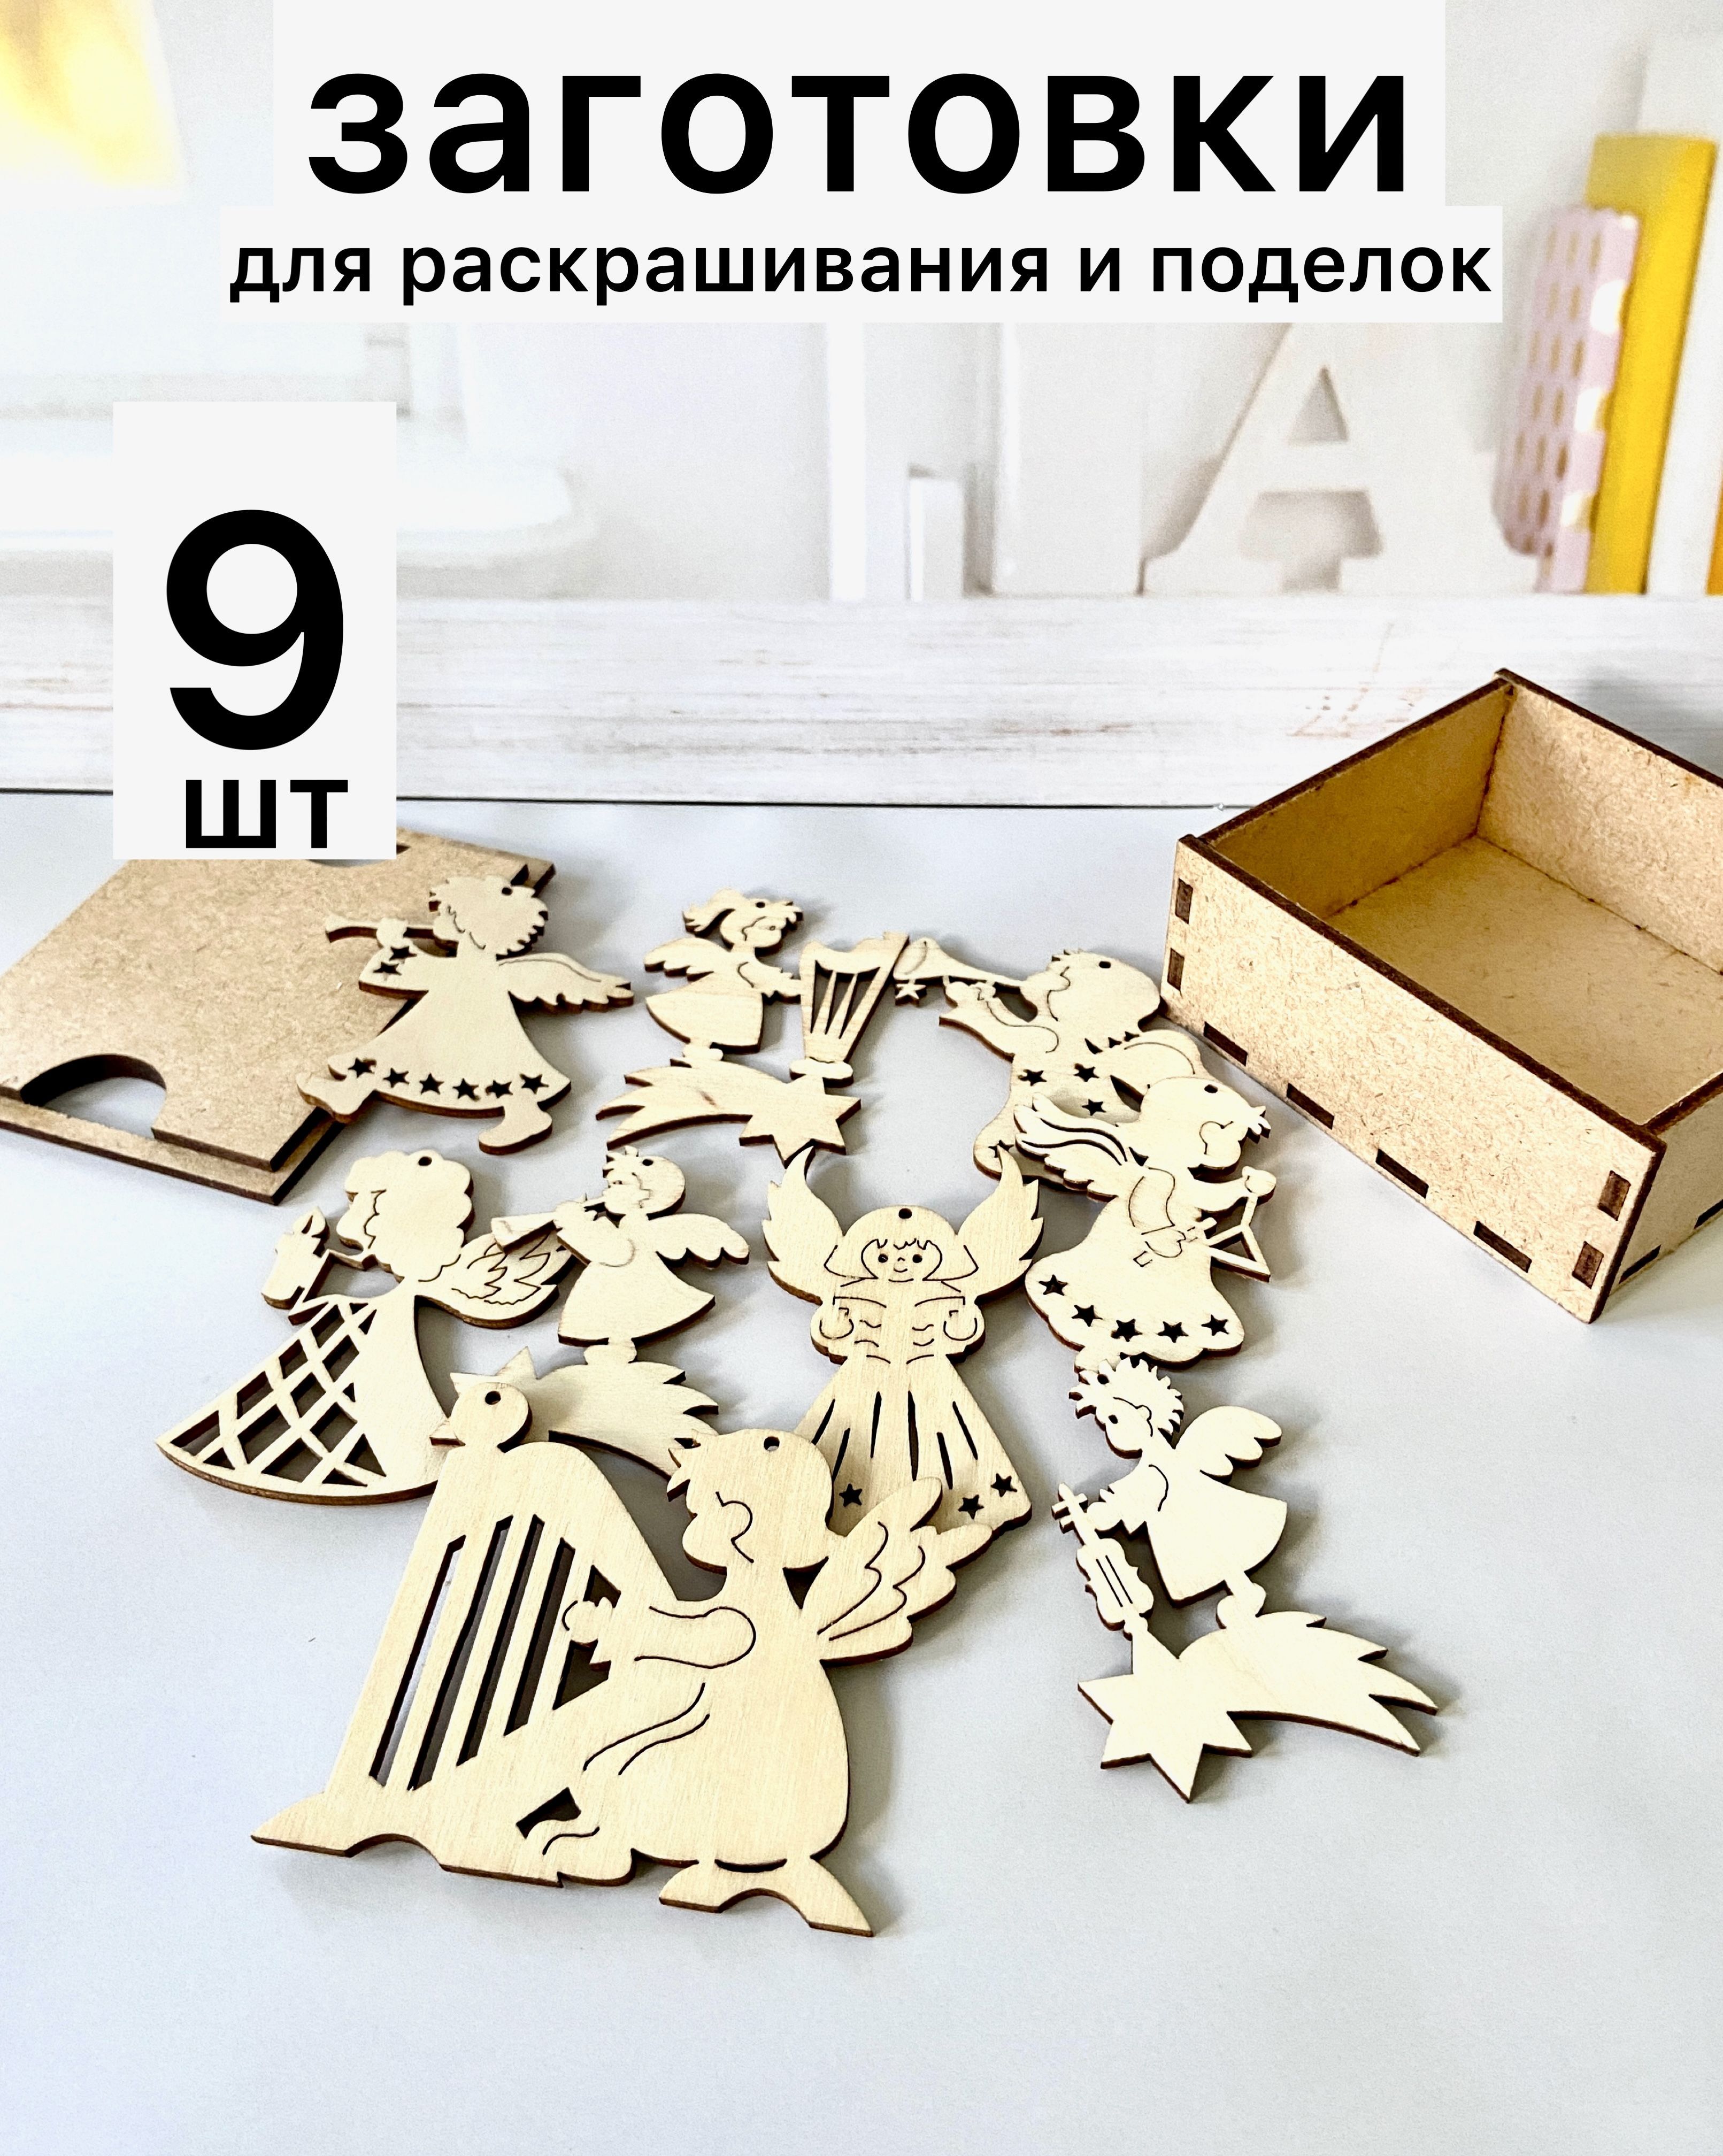 Подарочные деревянные шкатулки на заказ в Москве.